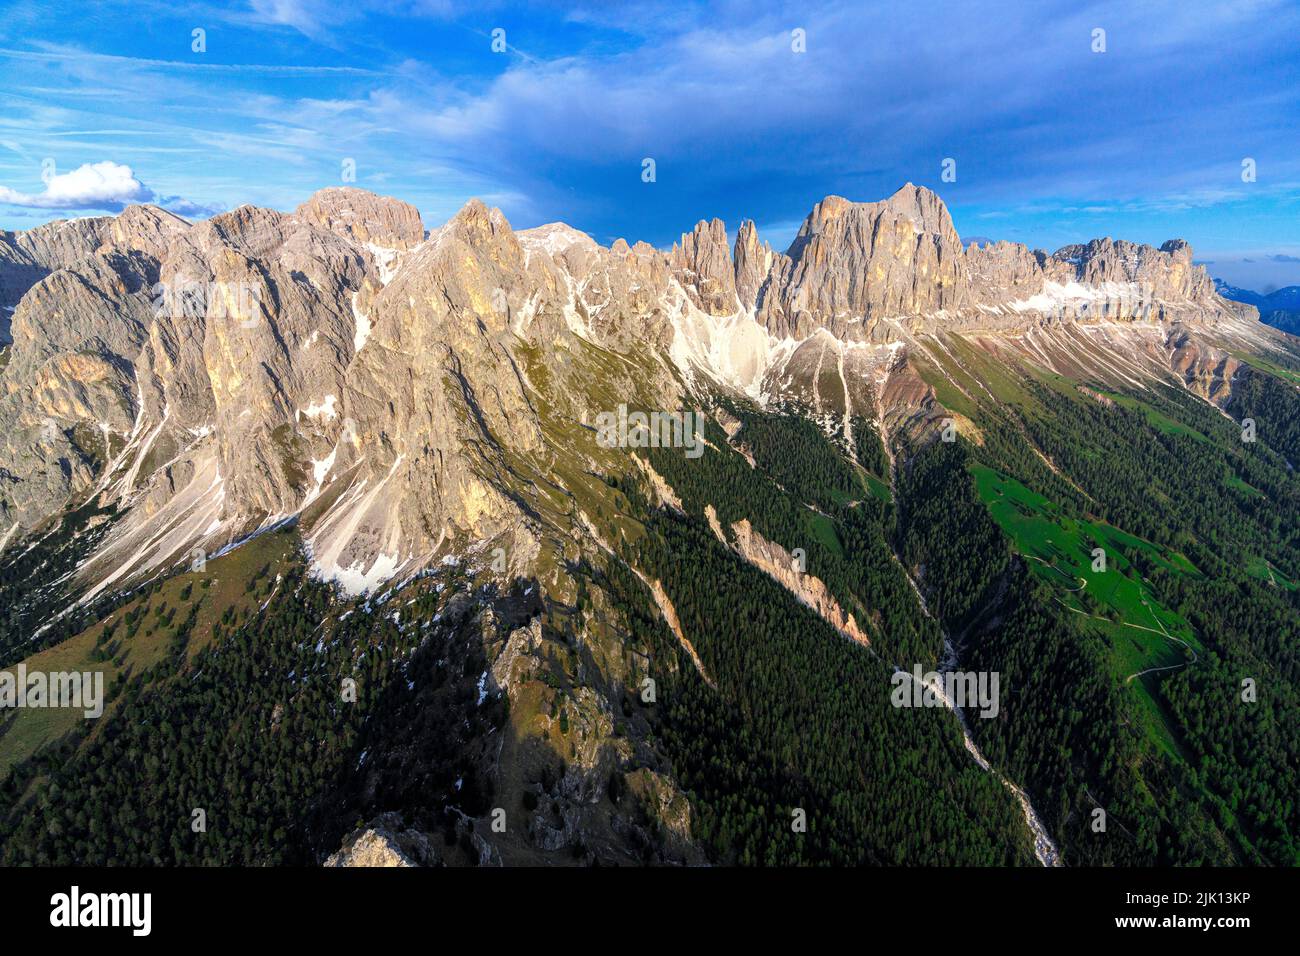 Vue aérienne des pics de Cima Catinaccio Rosengarten, Torri Del Vajolet et Catinaccio d'Antermoia, Dolomites, Tyrol du Sud, Italie, Europe Banque D'Images